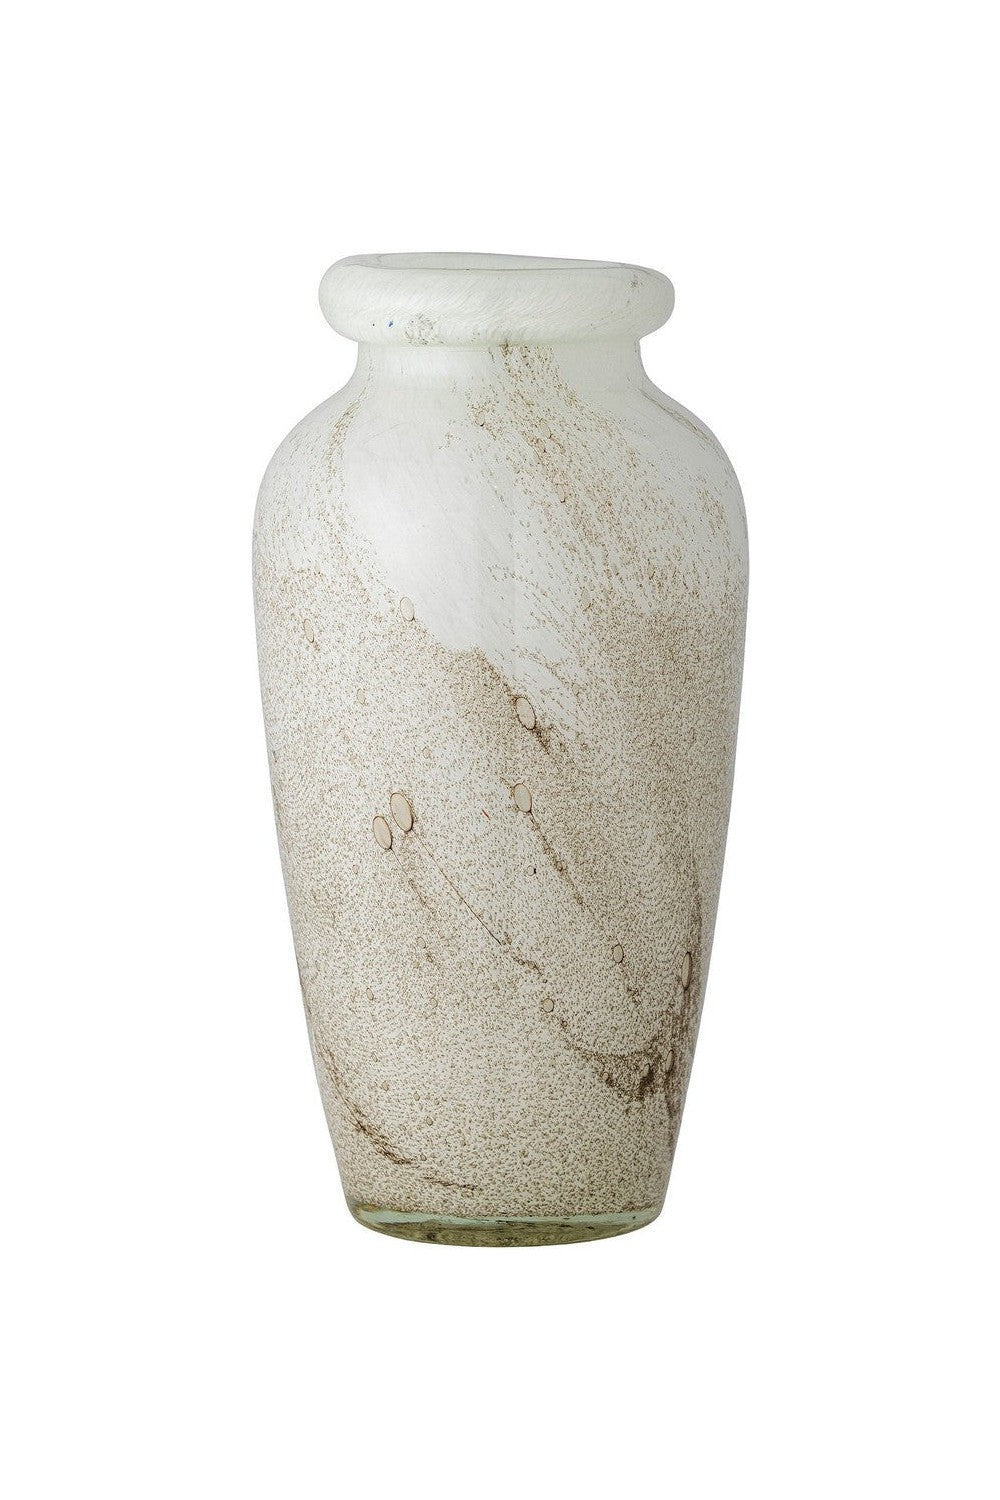 Bloomingville Lenore Vase, White, Glass